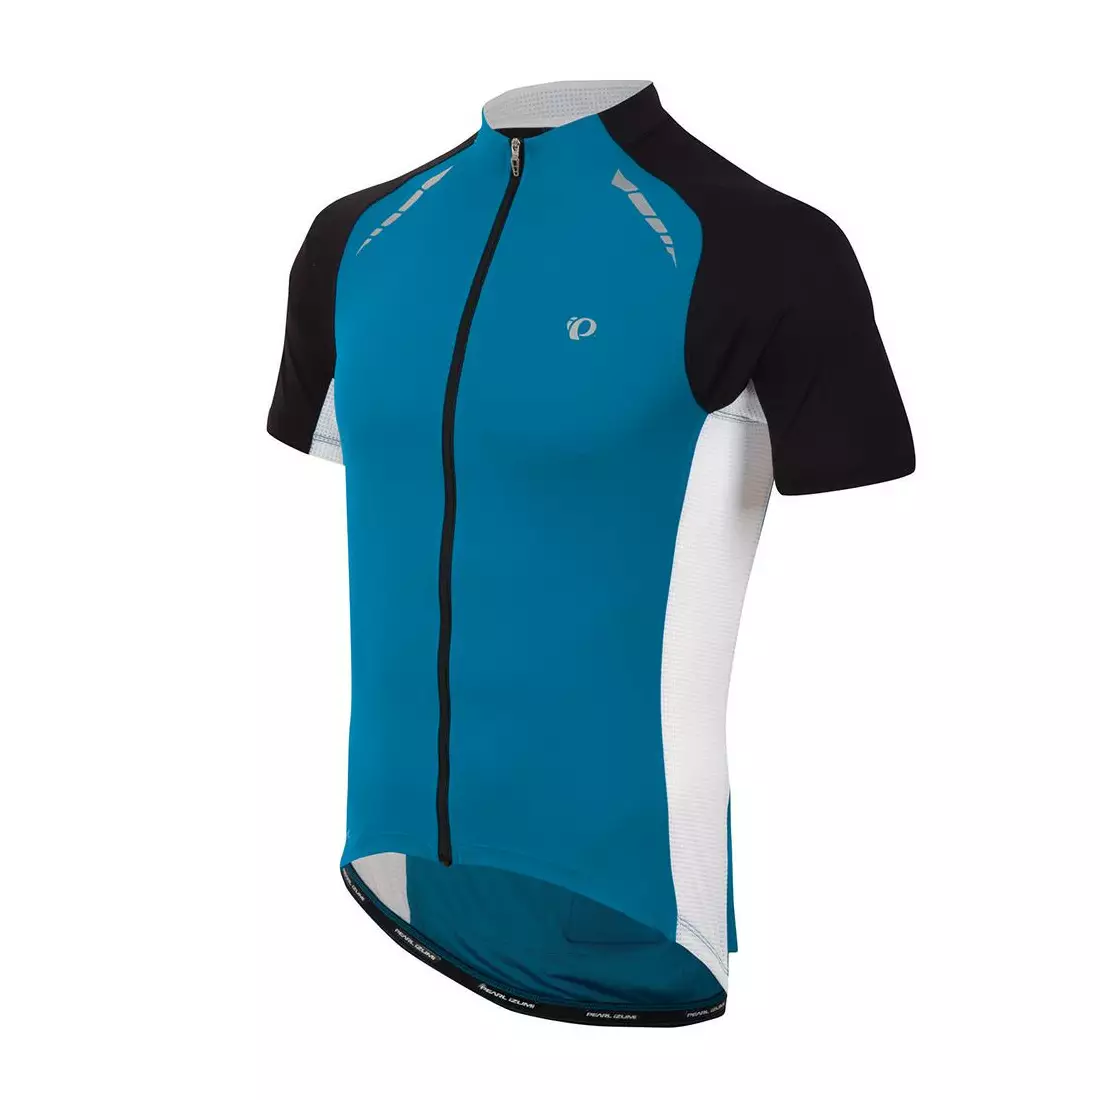 PEARL IZUMI - 11121311-4EC ELITE PURSUIT - svetlý cyklistický dres, farba: Modrá